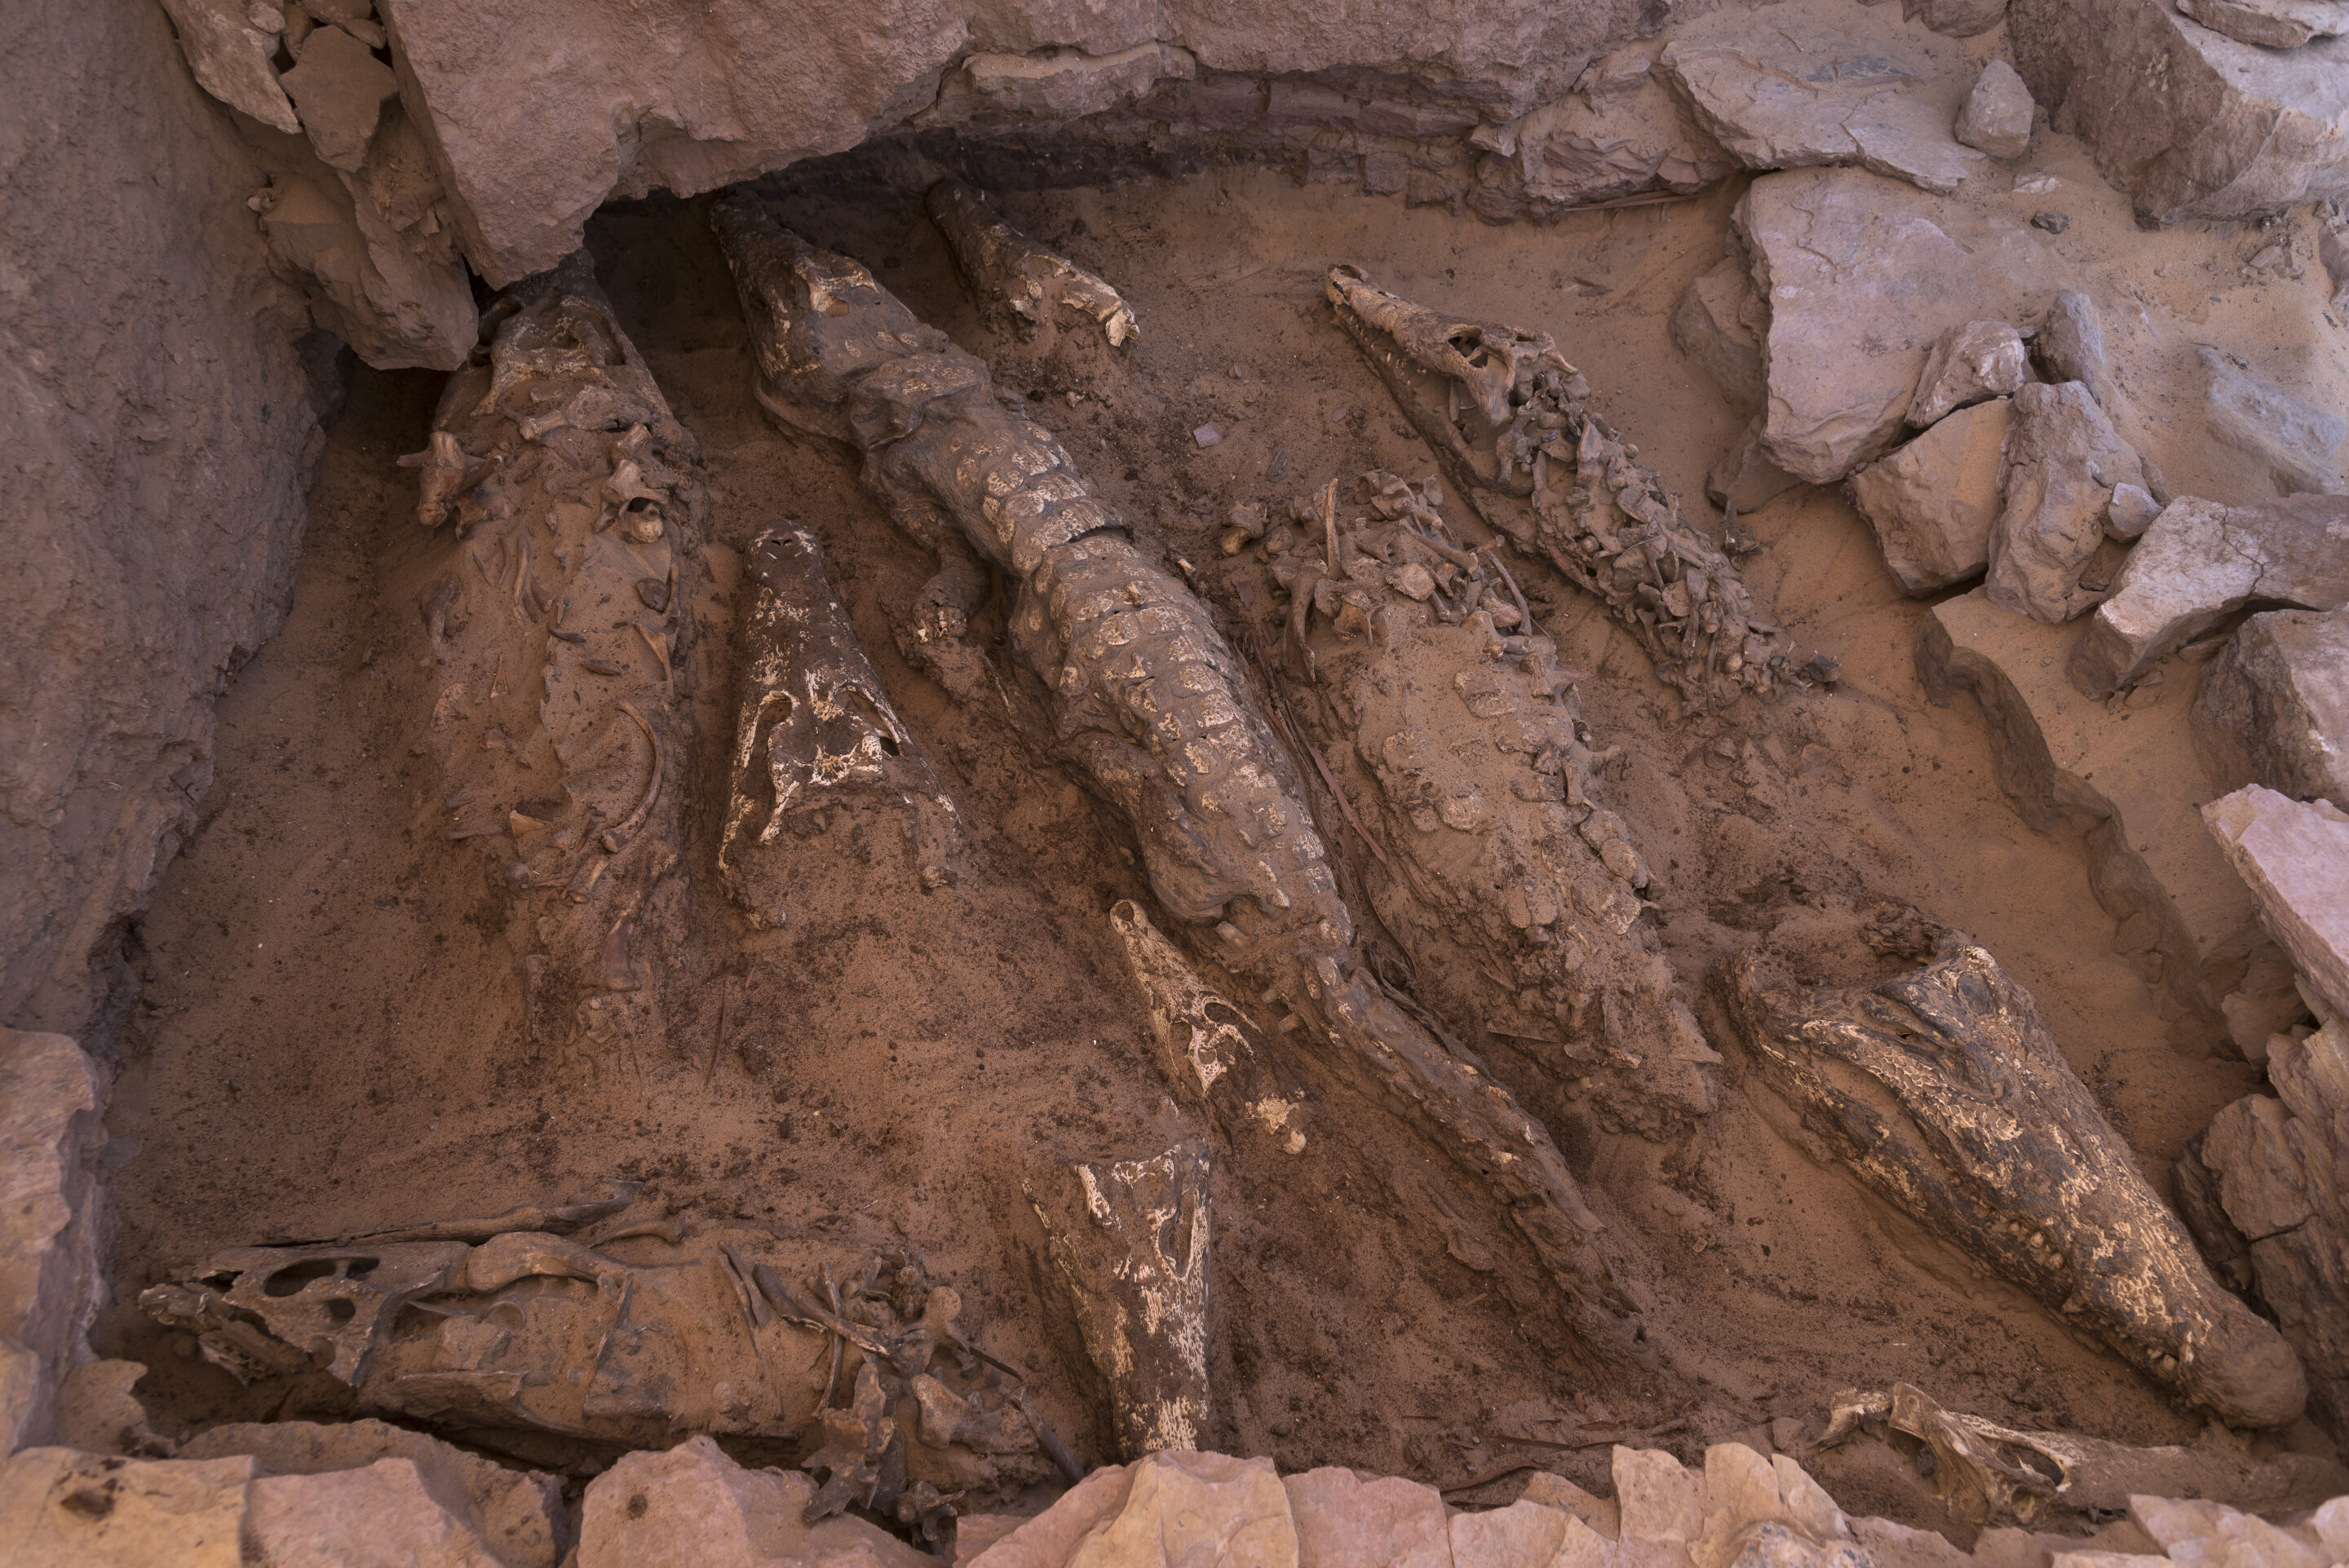 鳄鱼在公元前5世纪在埃及Qubbat al-Hawā遗址以独特的方式被木乃伊化